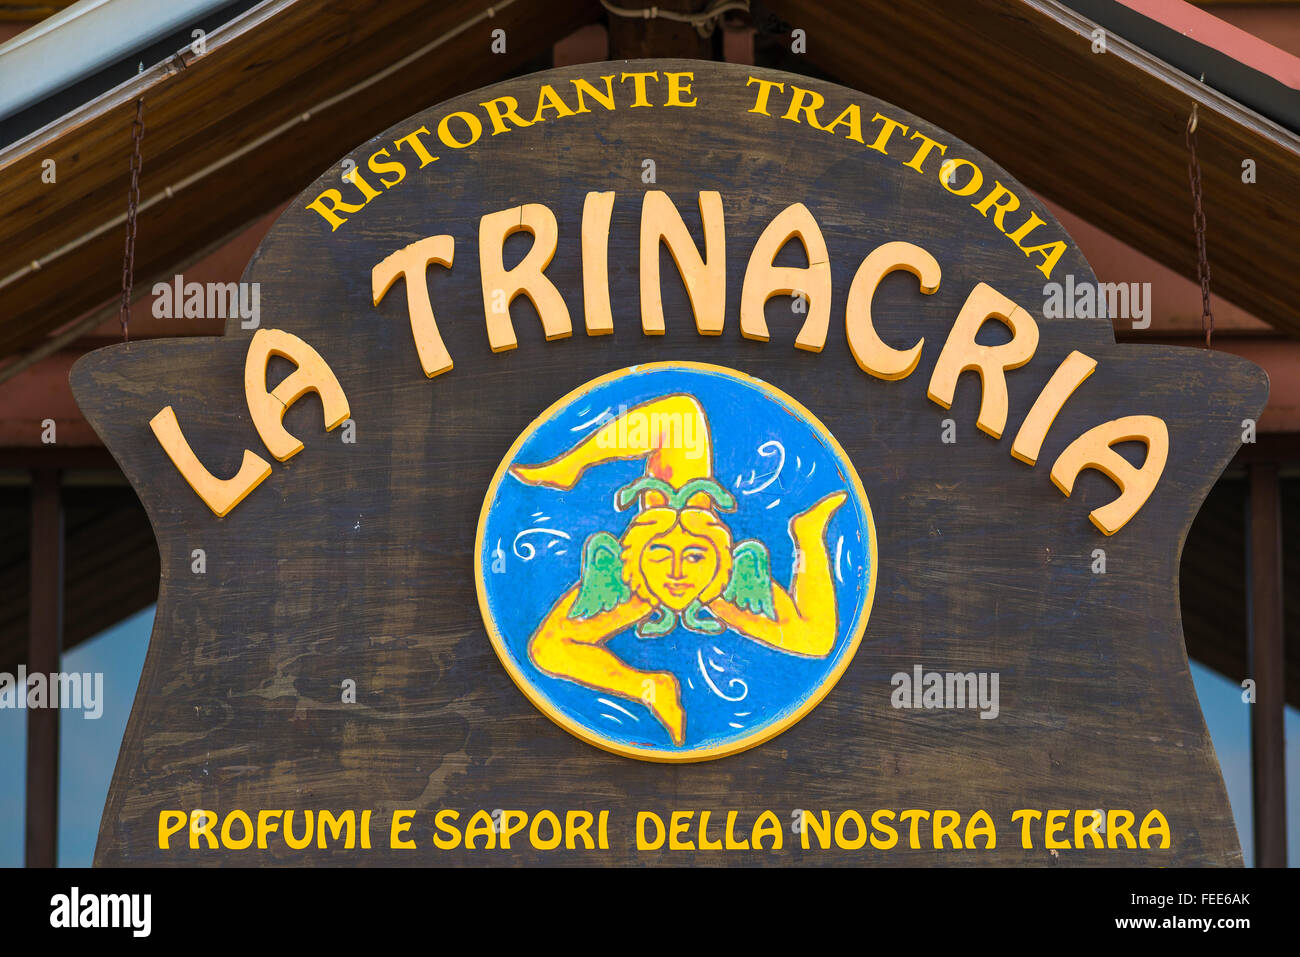 Sicile restaurant, un restaurant sign à Enna, Sicile, dépeint l'île à trois pattes distinctive de l'emblème régional, la Trinacria. Banque D'Images